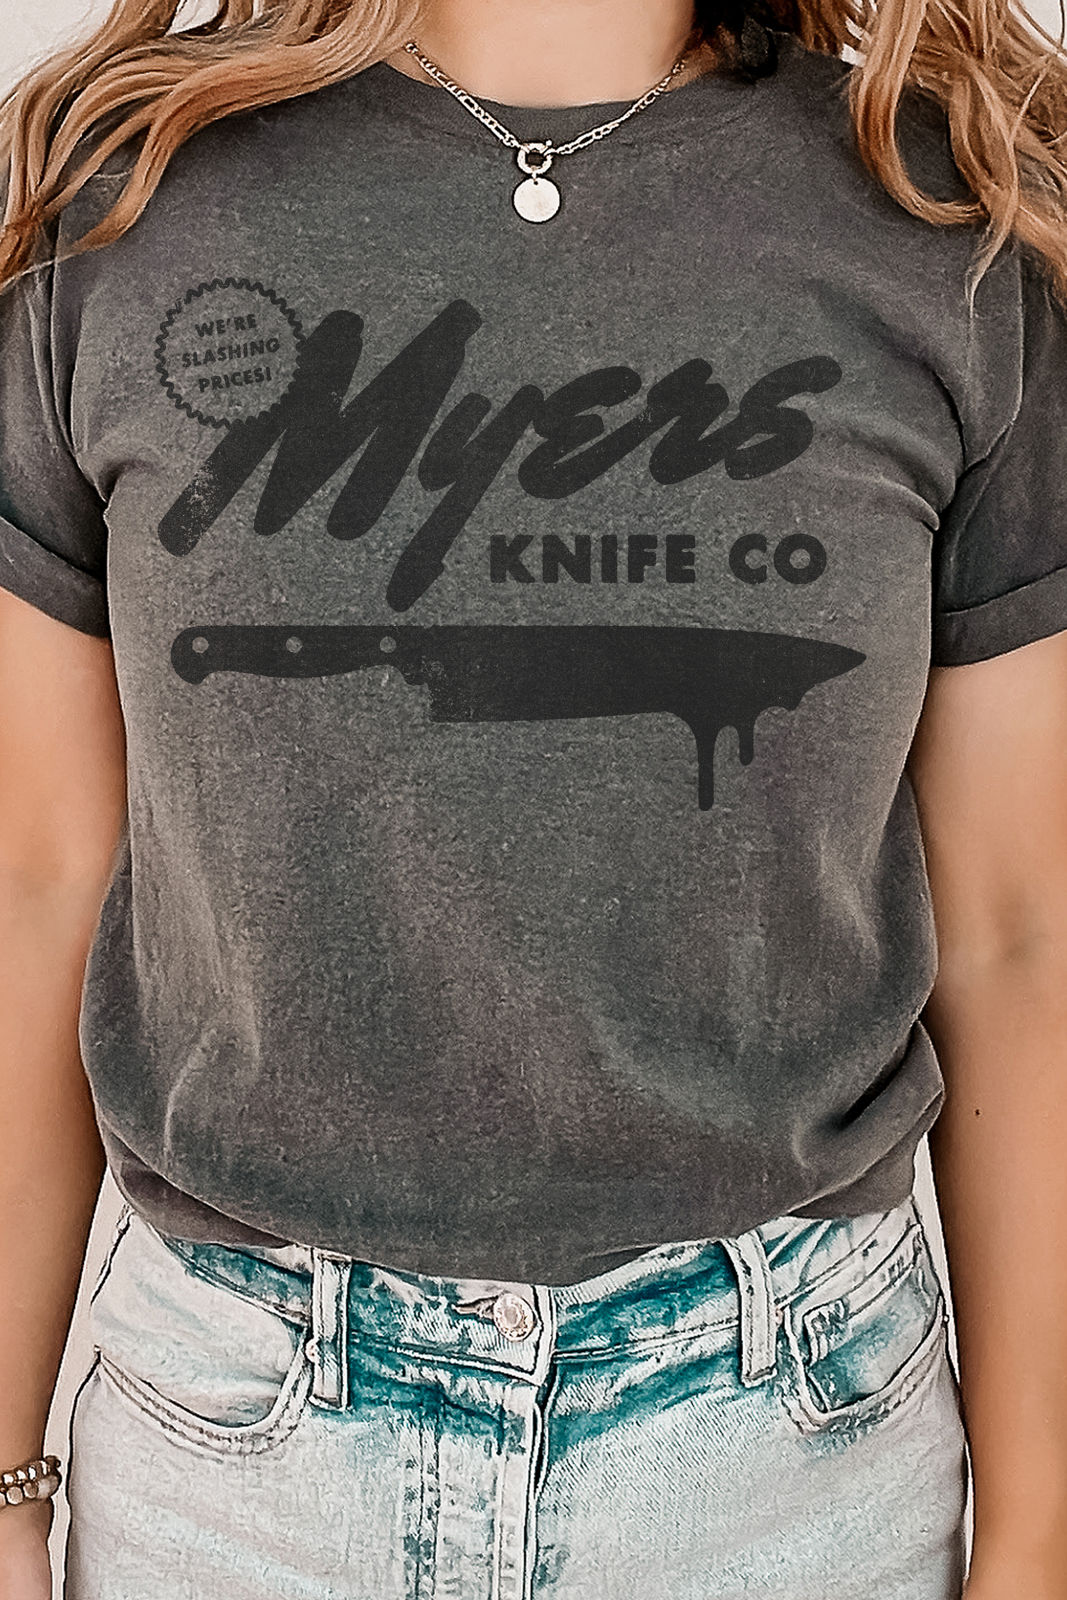 Myers Knife Co Tee/Sweatshirt